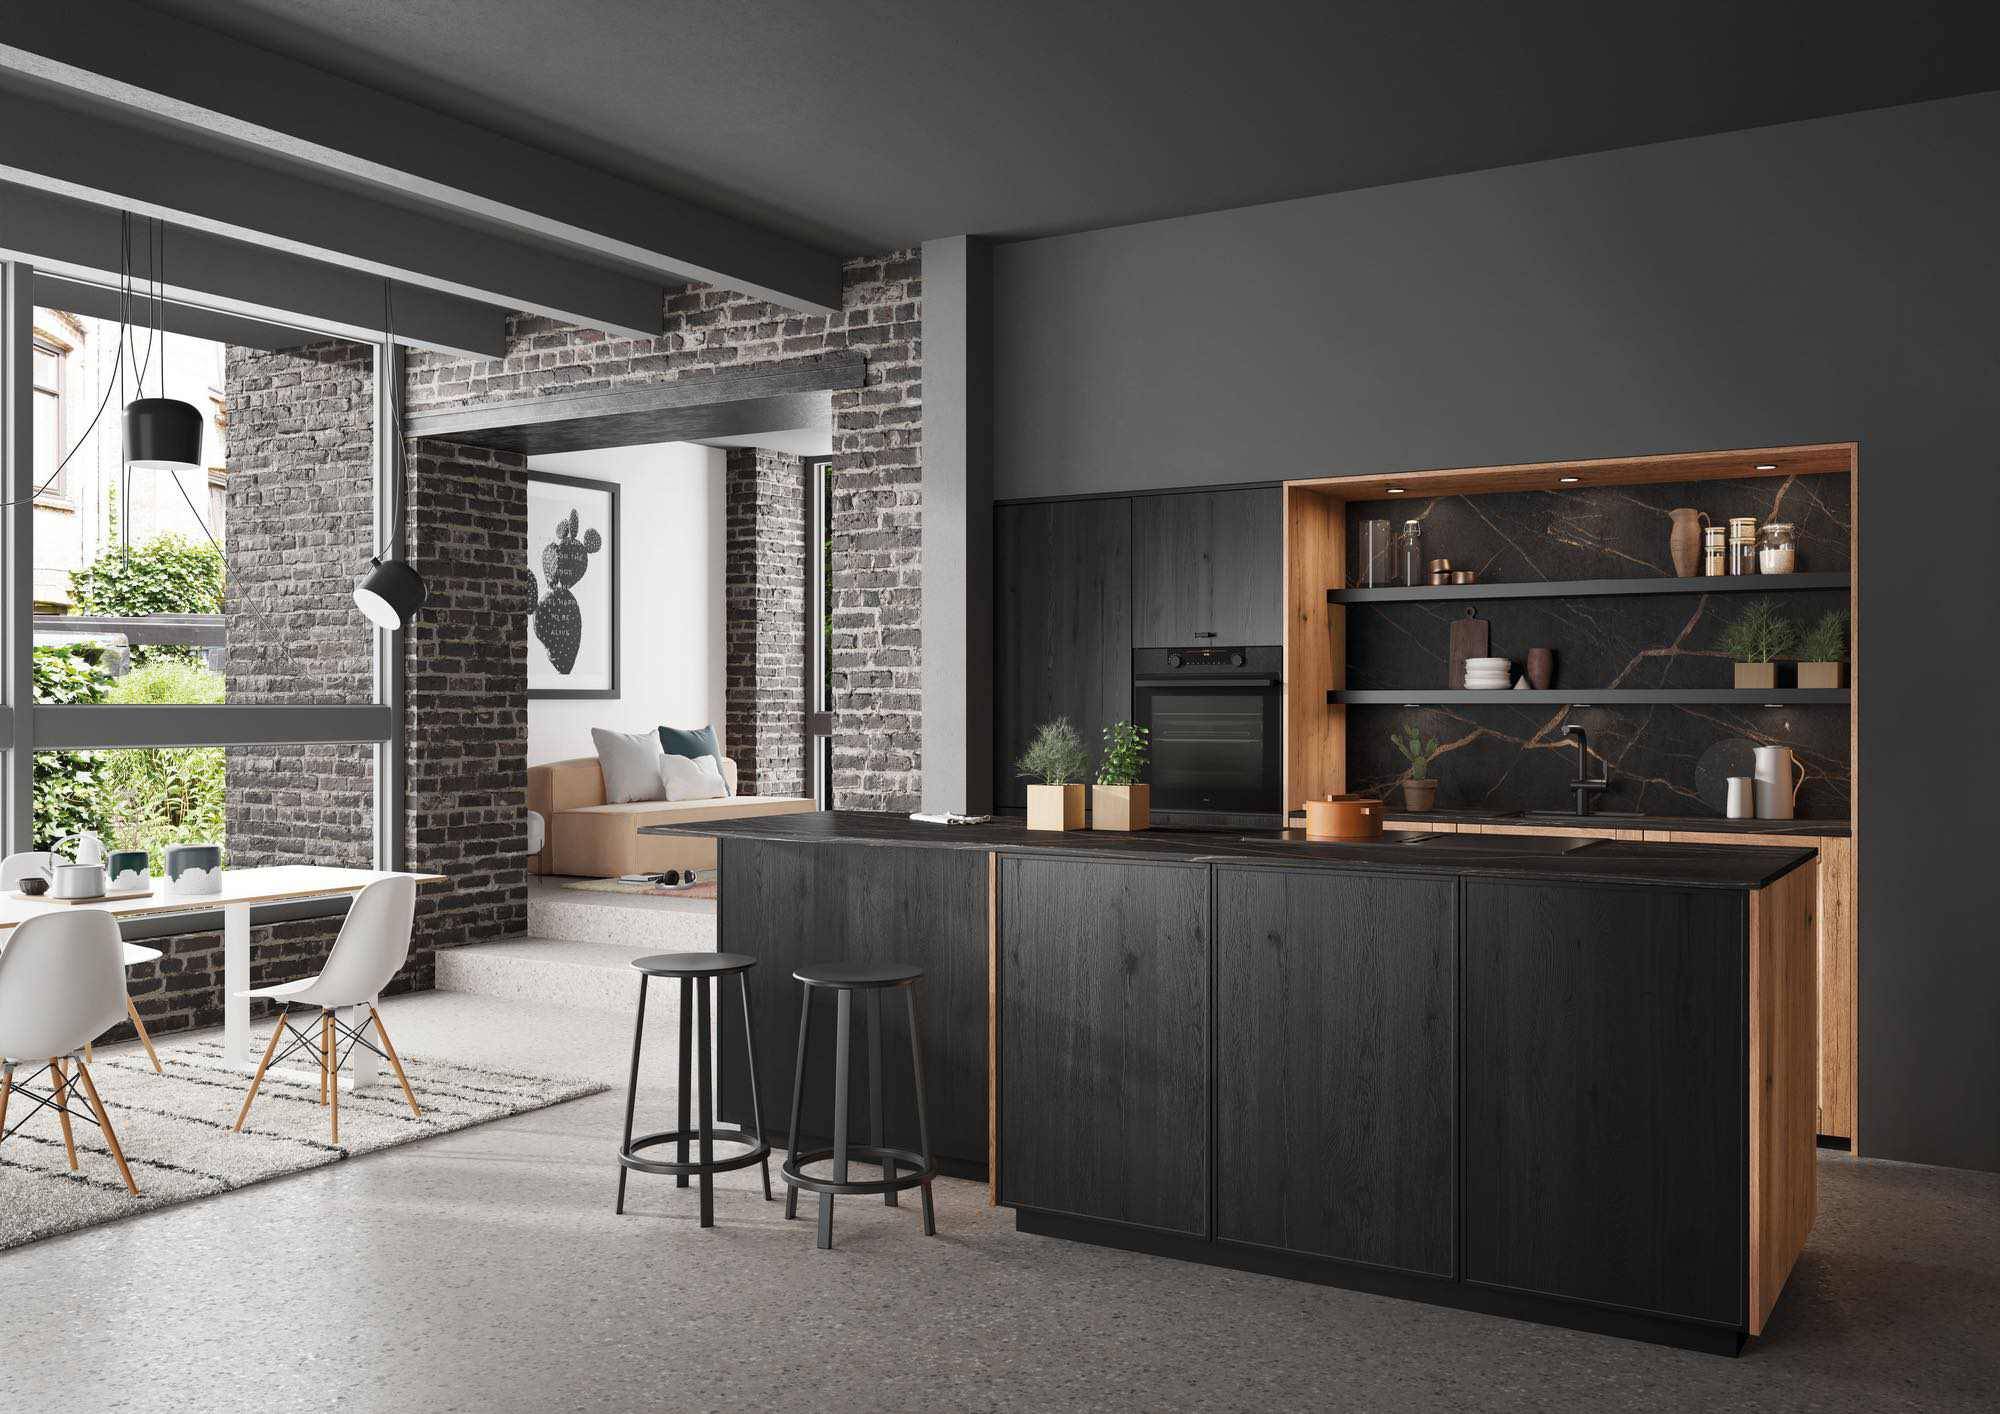 Rotpunkt Dark Wood Kitchen With Island 4 | Zara Kitchen Design, Wokingham